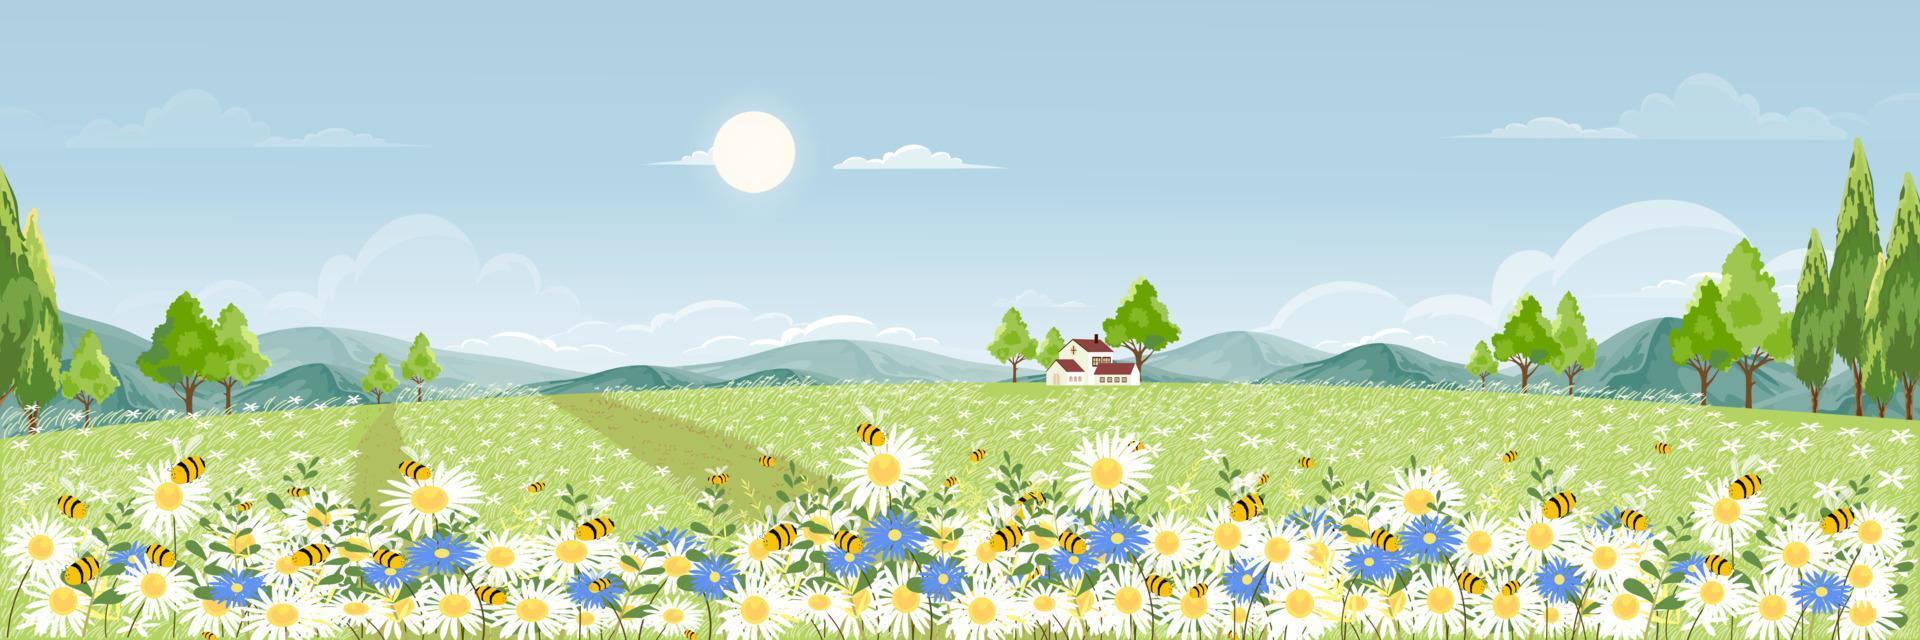 campo de primavera con nubes esponjosas en el cielo azul, lindo panorama de dibujos animados paisaje rural hierba verde con abeja melífera recolectando polen en flores en el verano soleado, banner de fondo vectorial para la primavera vector